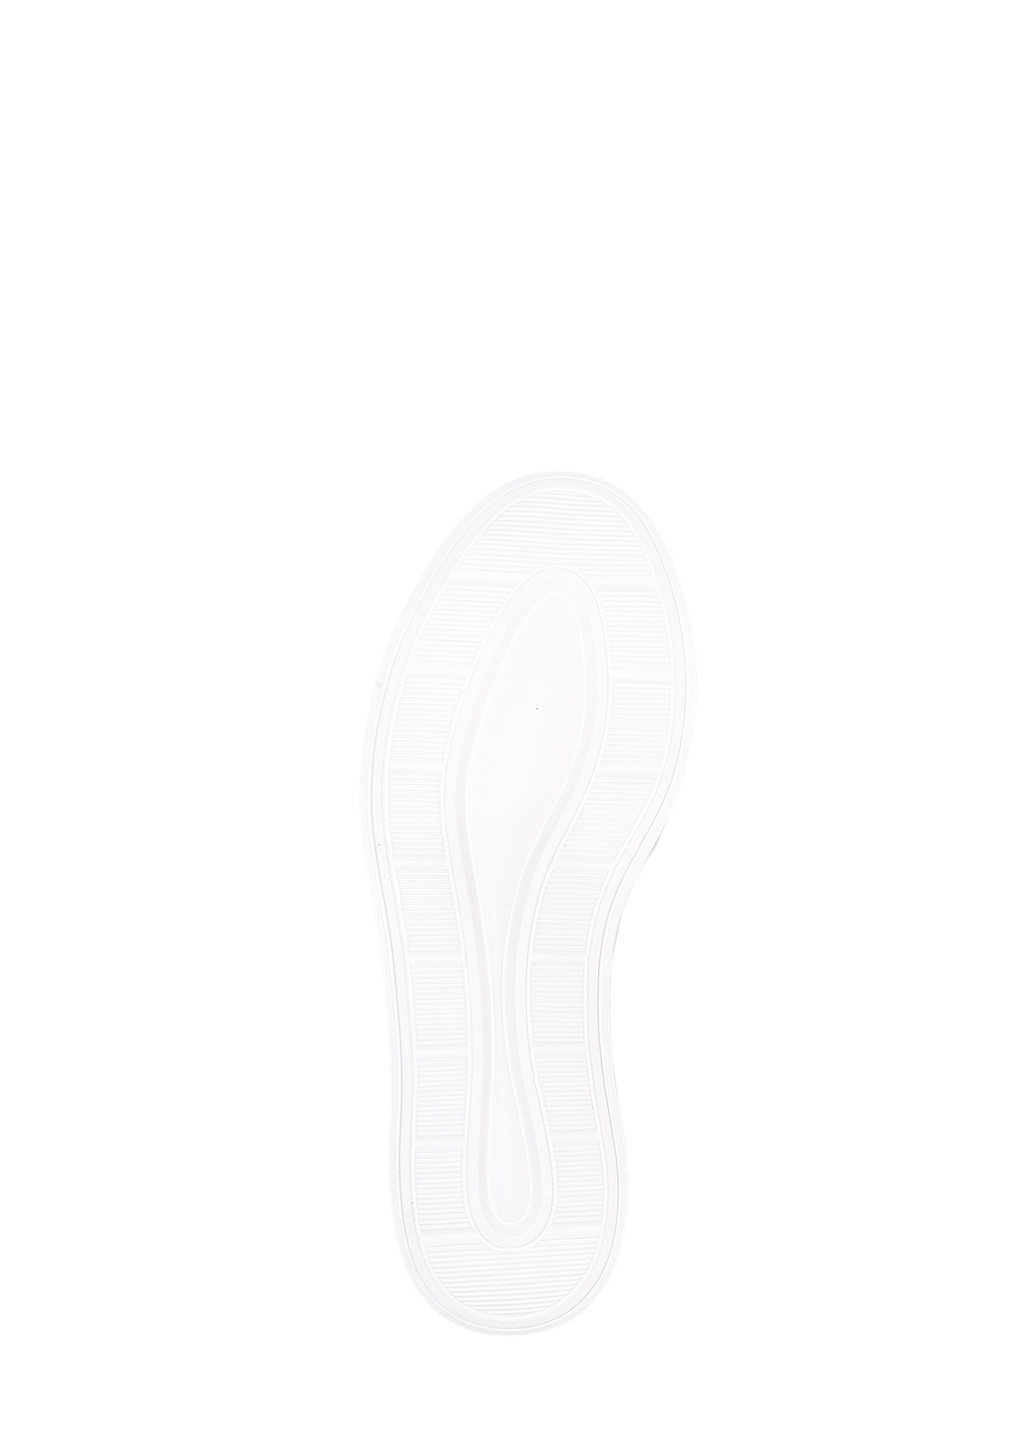 Цветные демисезонные кроссовки st2350-8 white-black Stilli